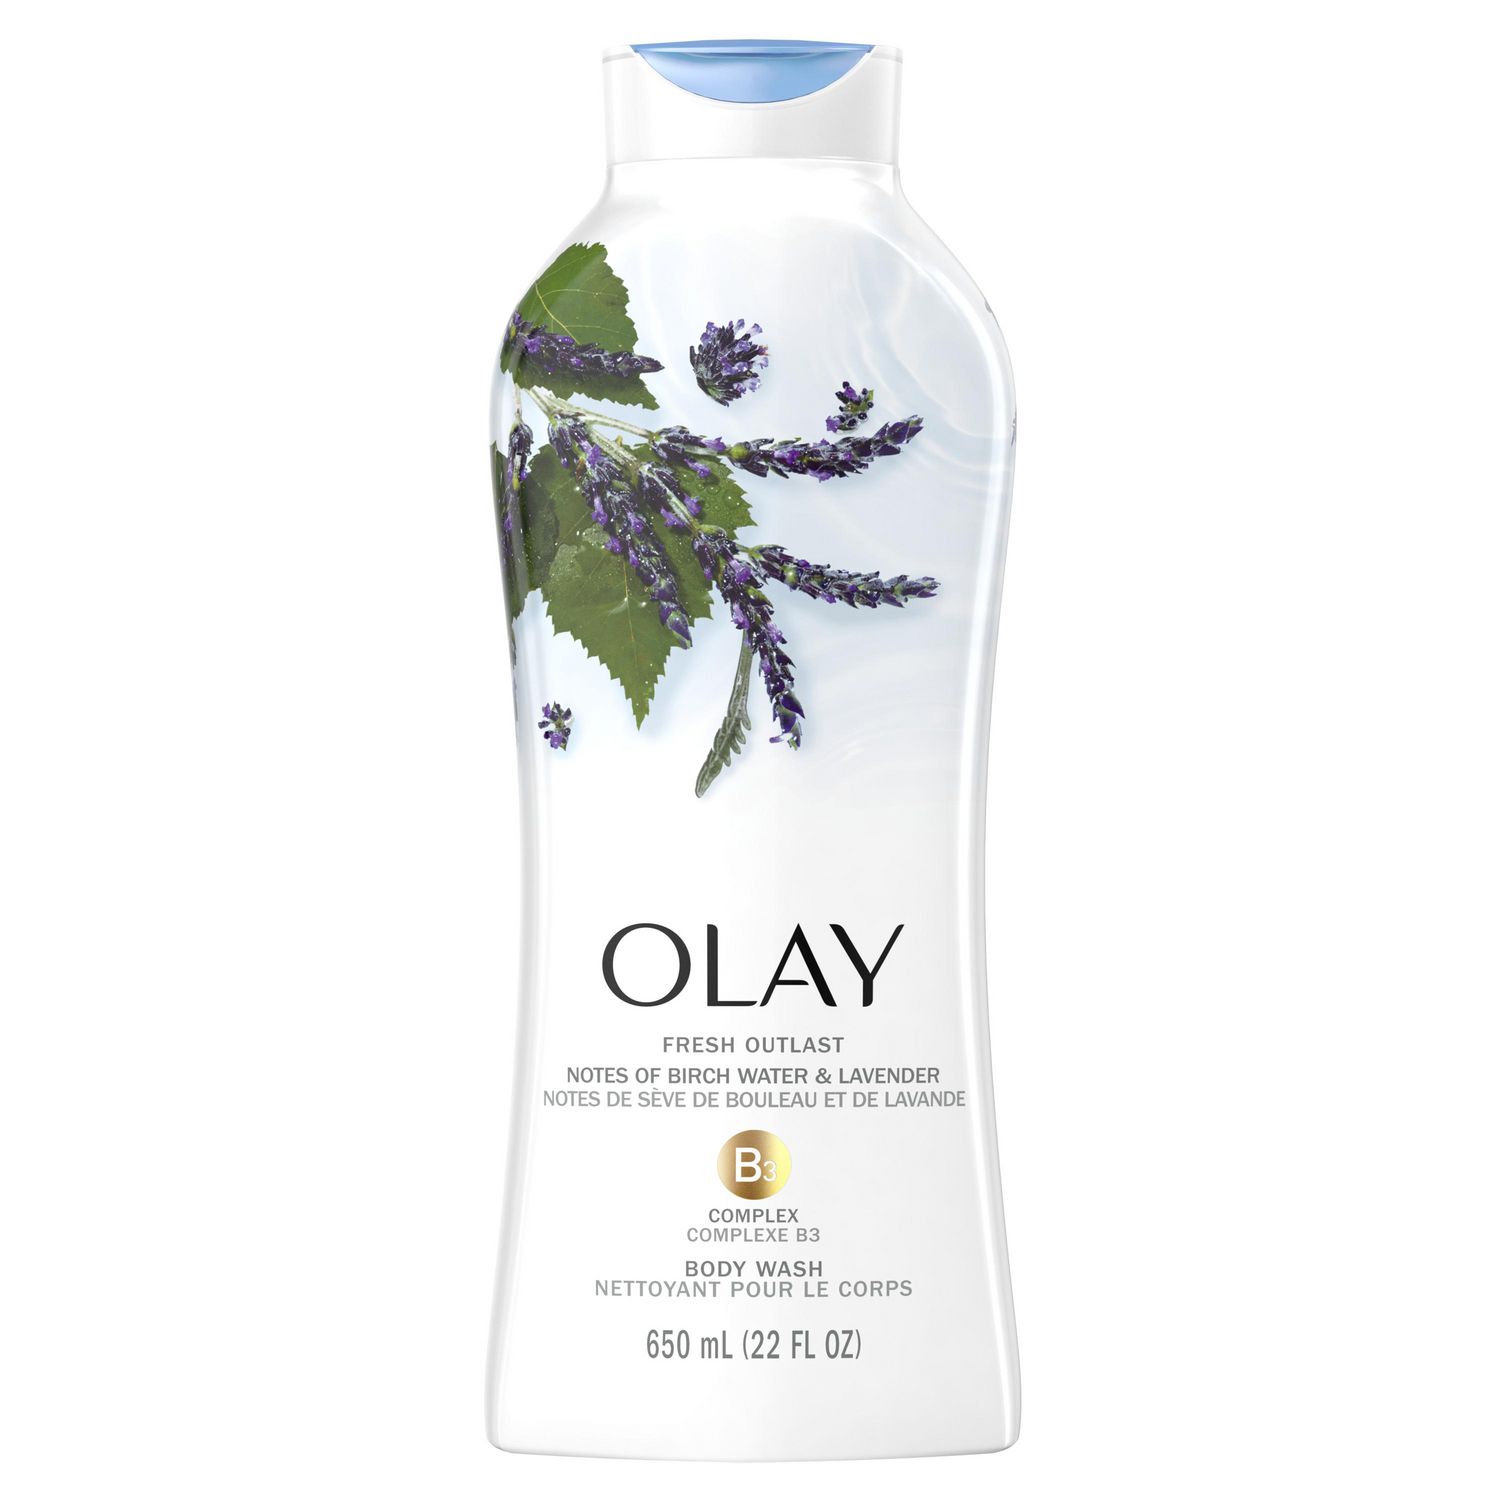 Olay Fresh Outlast Purifying Birch Water & Lavender Body Wash Walmart Canada